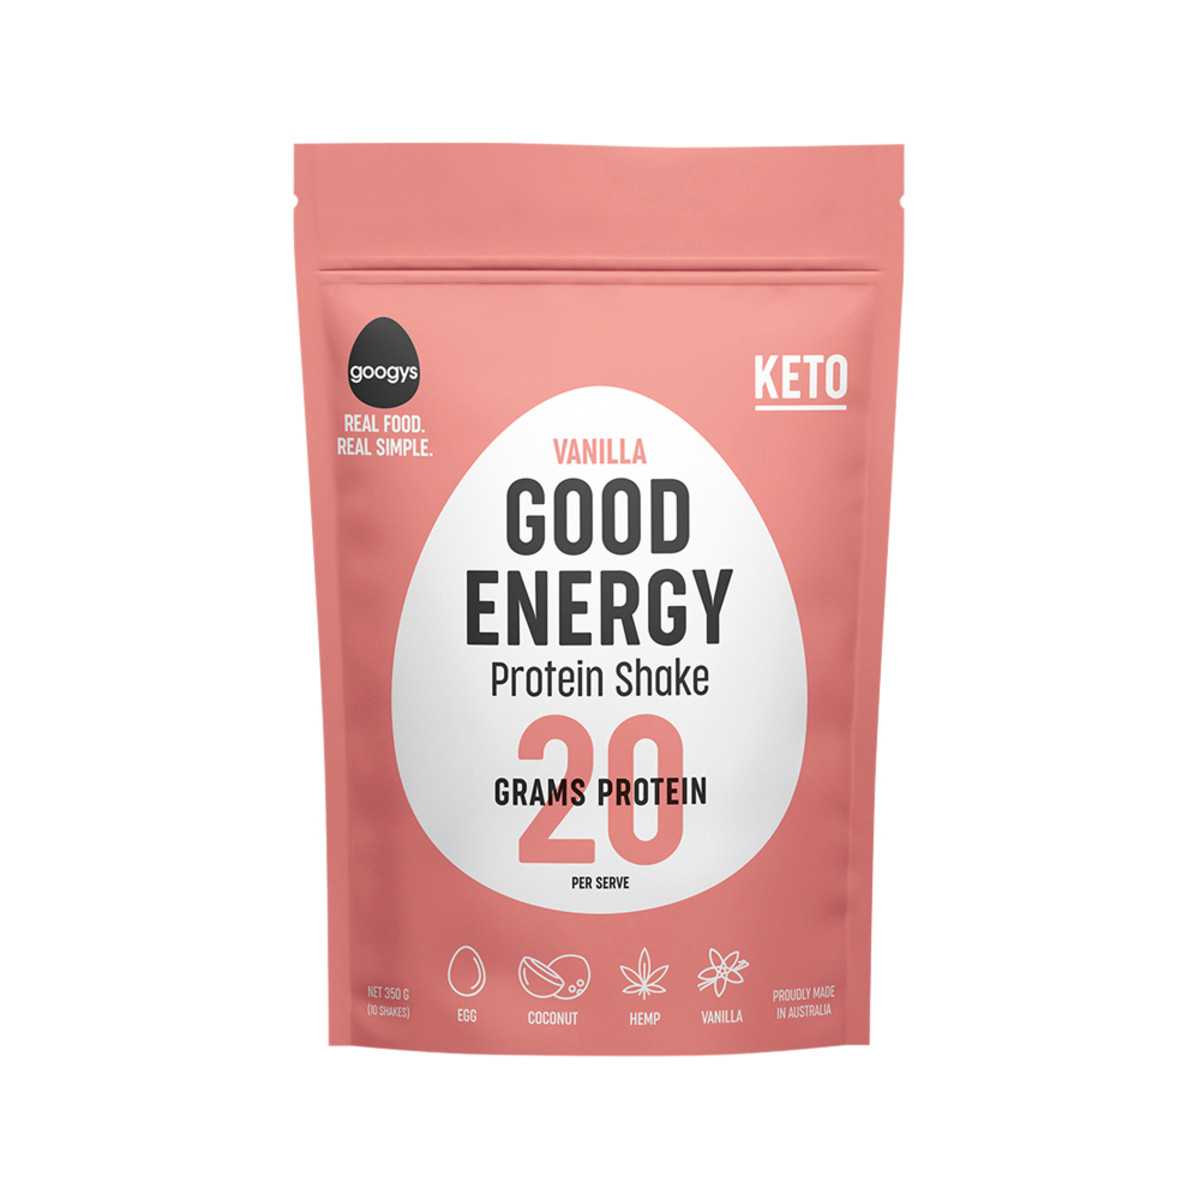 GOOGYS - Good Energy Protein Shake Vanilla